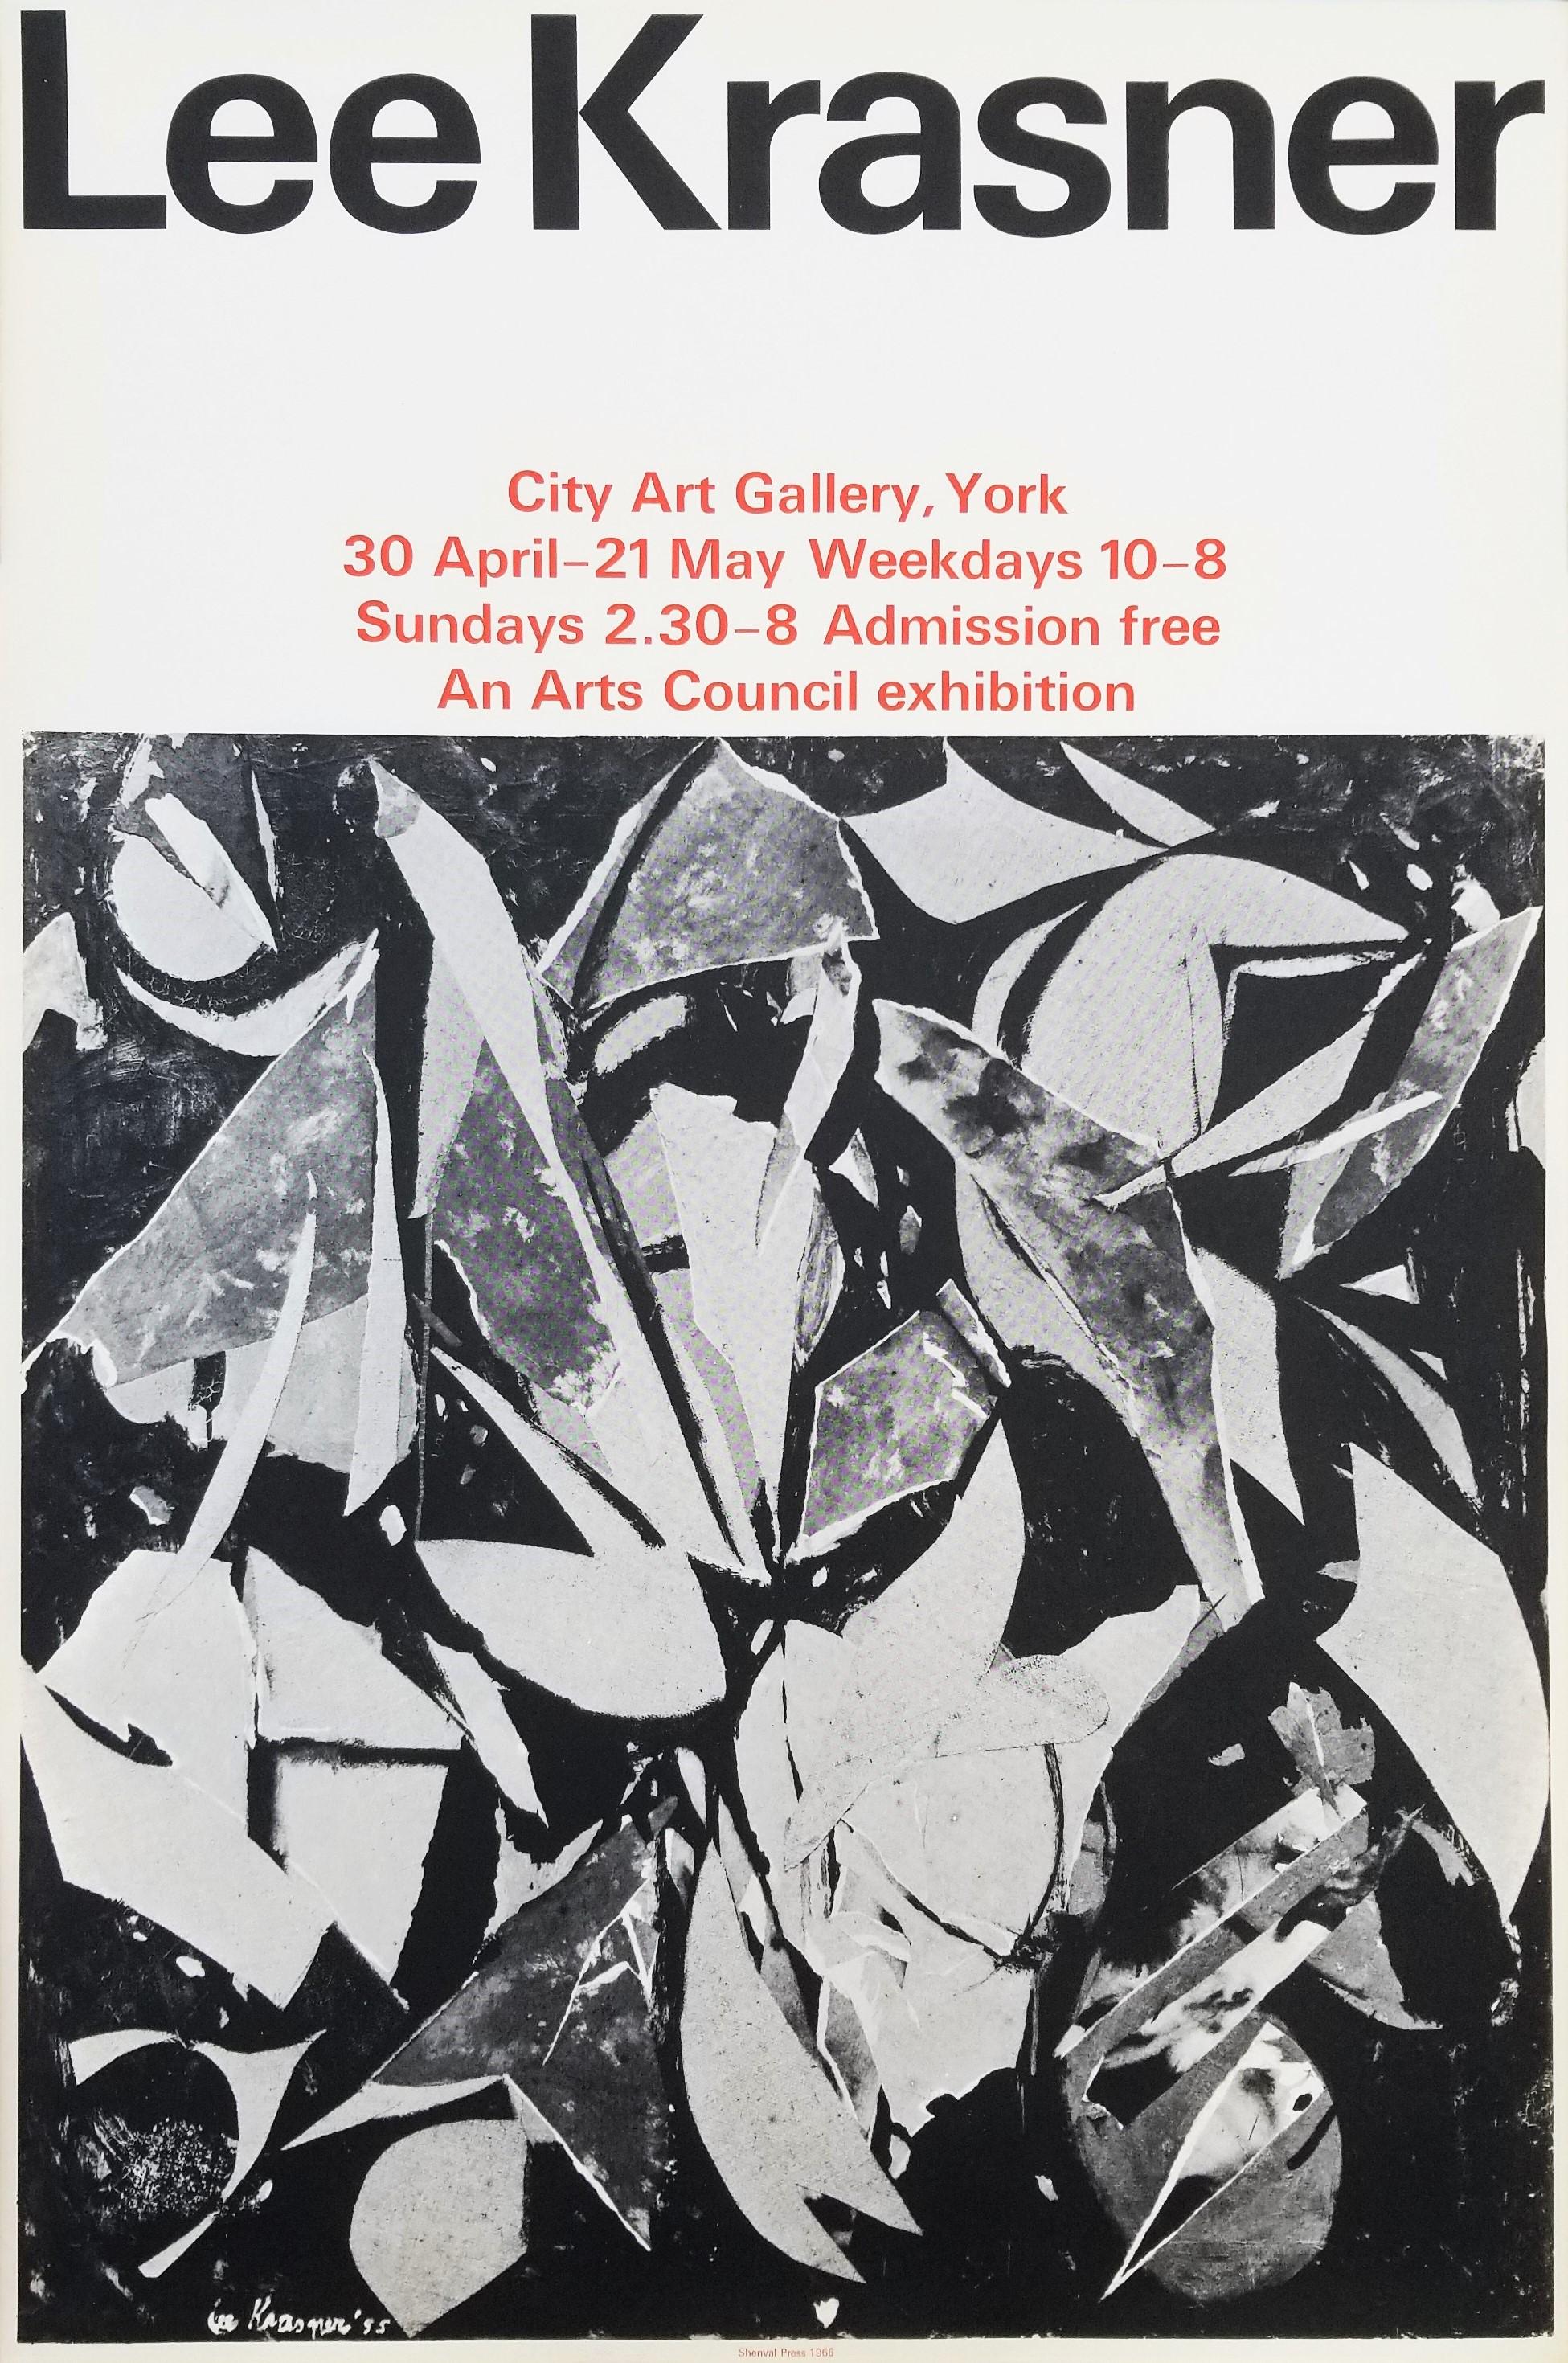 Künstler: (nach) Lee Krasner (Amerikaner, 1908-1984)
Titel: "Städtische Kunstgalerie (Vogelgespräch)"
*Signiert und datiert von Krasner in der Platte (gedruckte Signatur) unten links
Jahr: 1966
Medium: Original Lithographie, Ausstellungsplakat auf